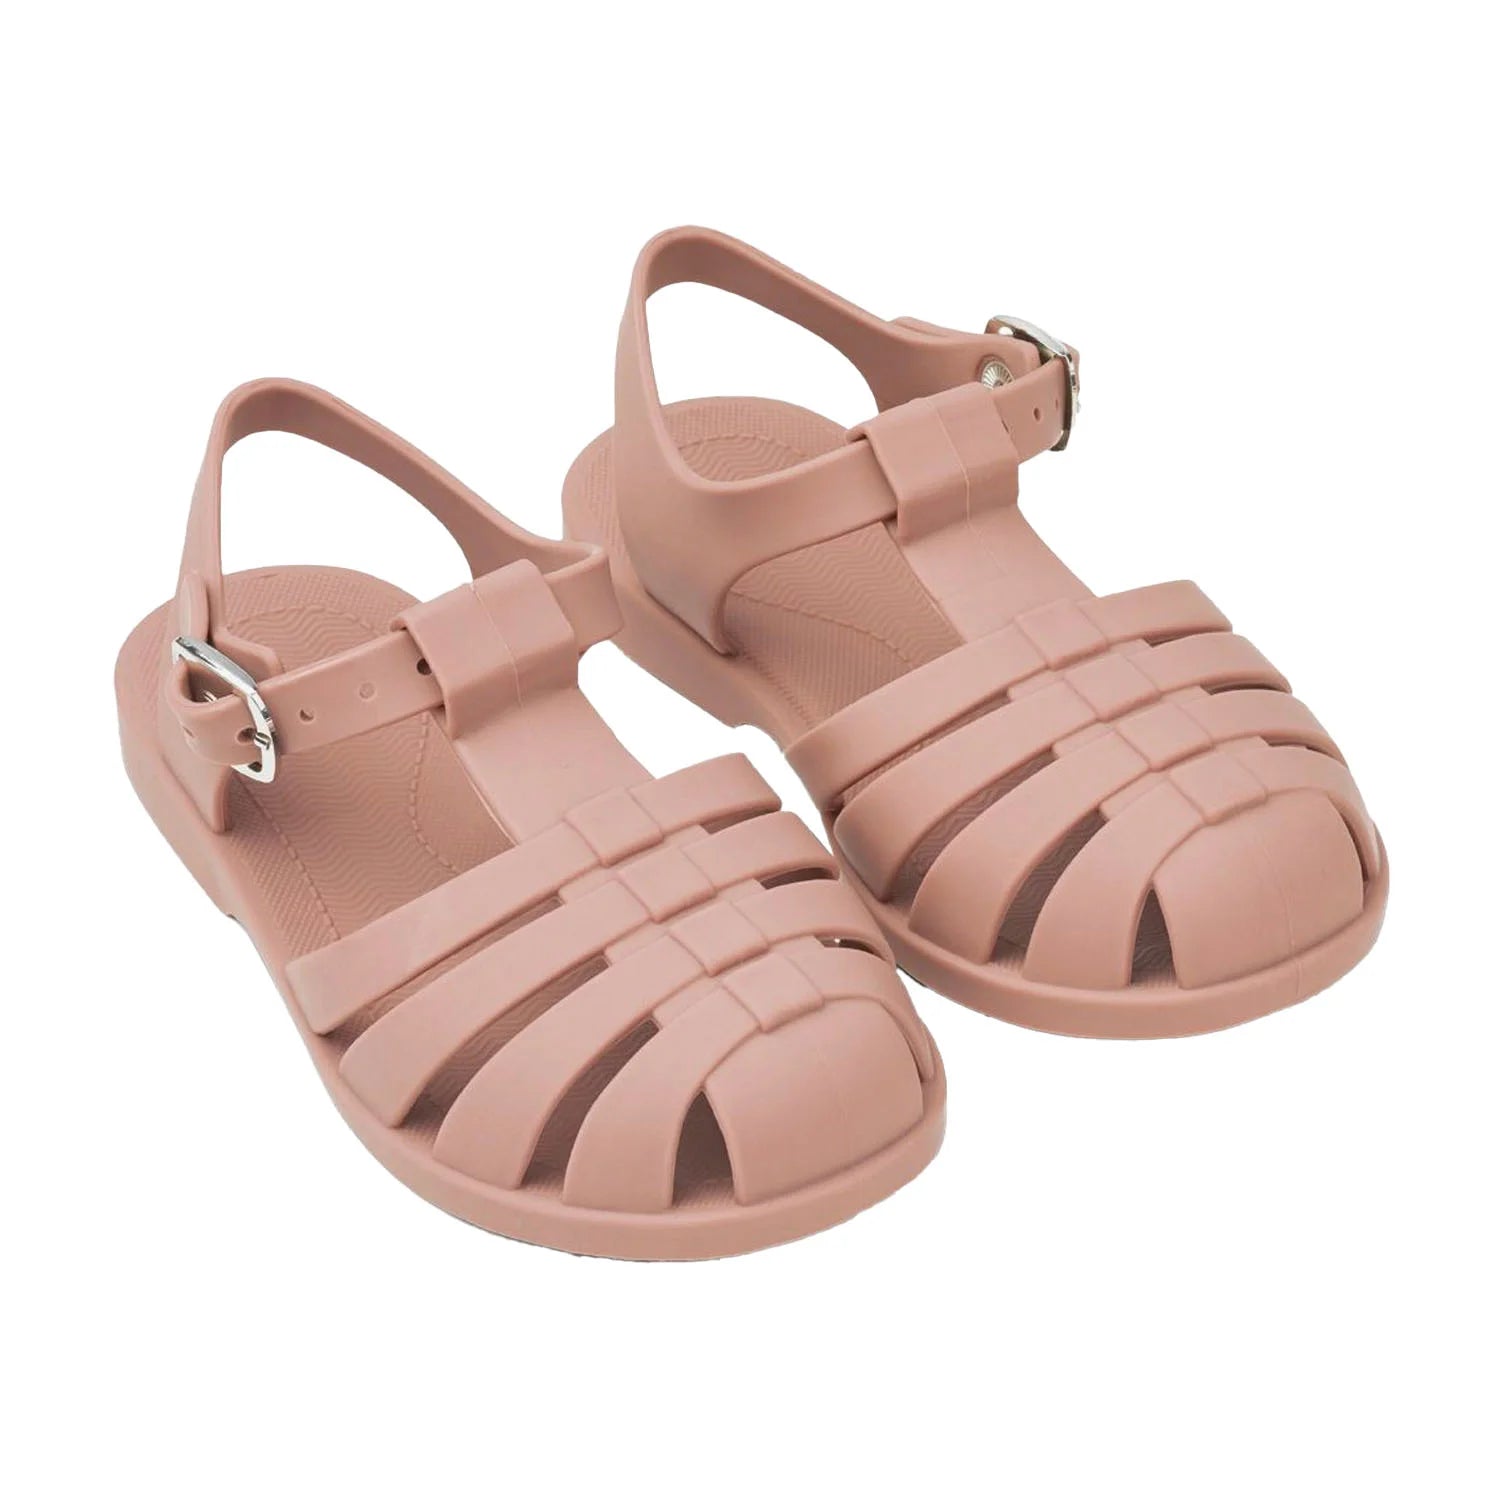 An image of Buy Liewood Bre Beach Sandals - Summer Kids Sandals Dark Rose / 19